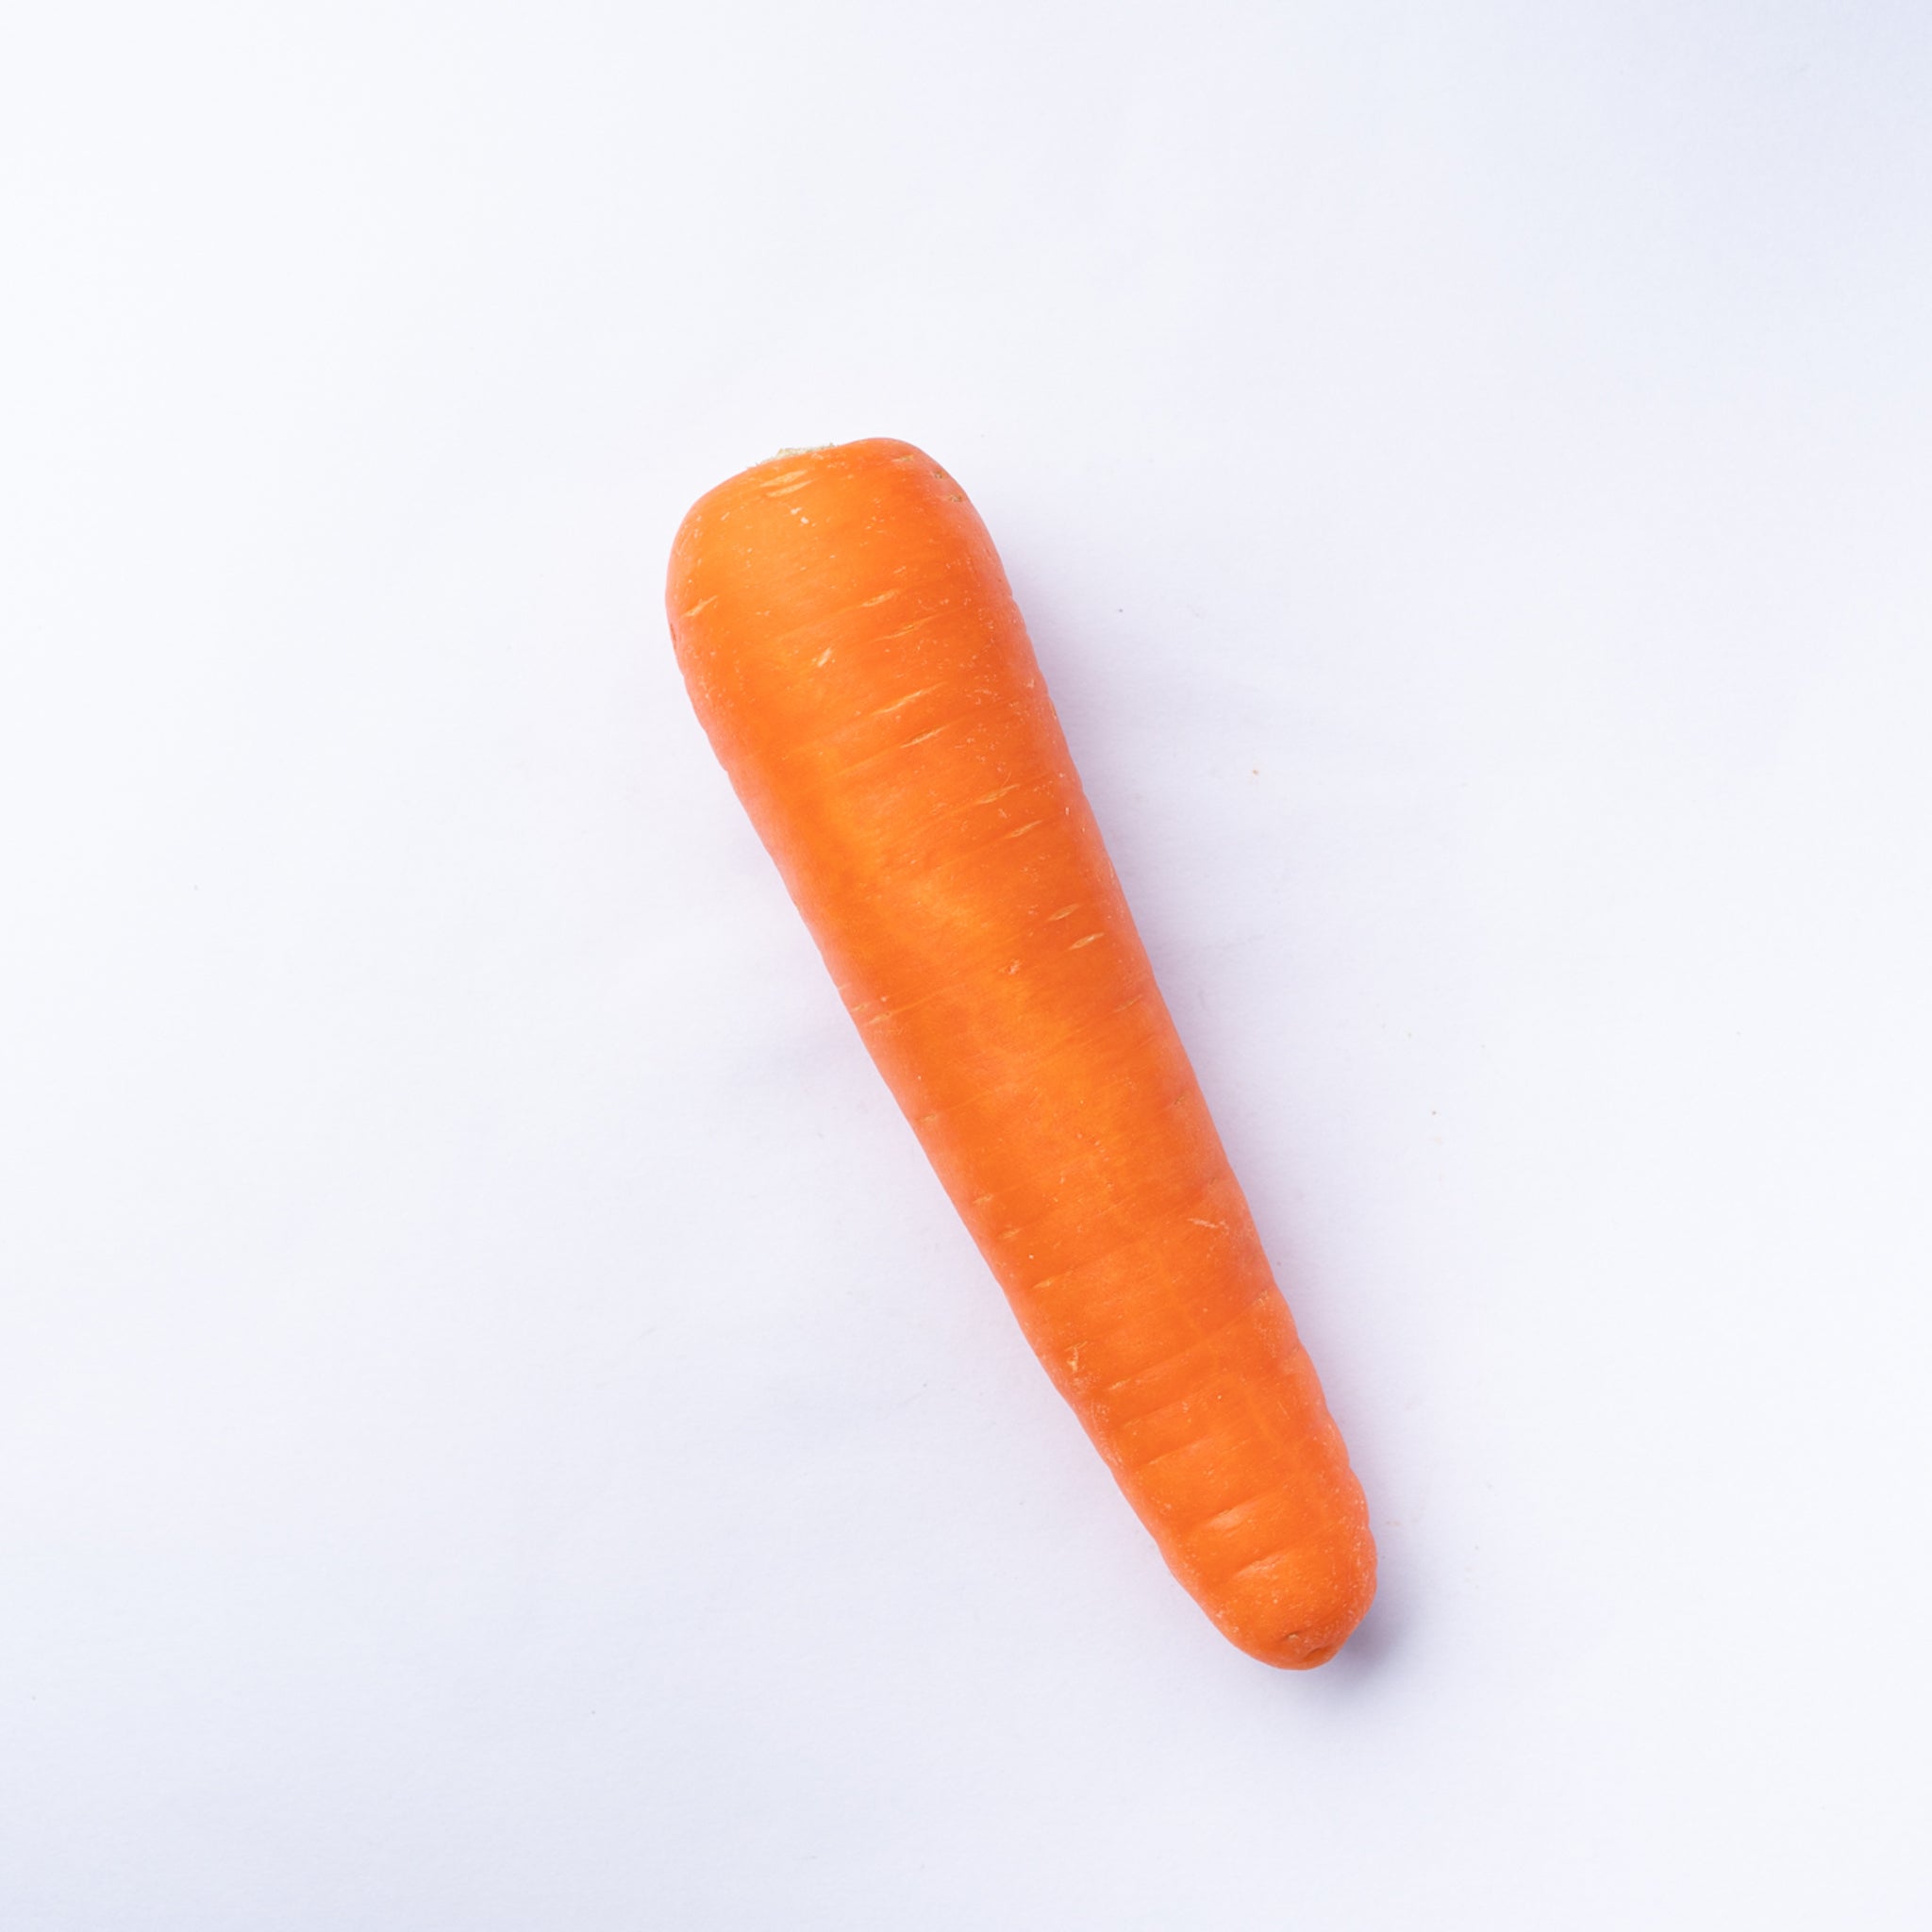 A carrot. Plain & Simple.